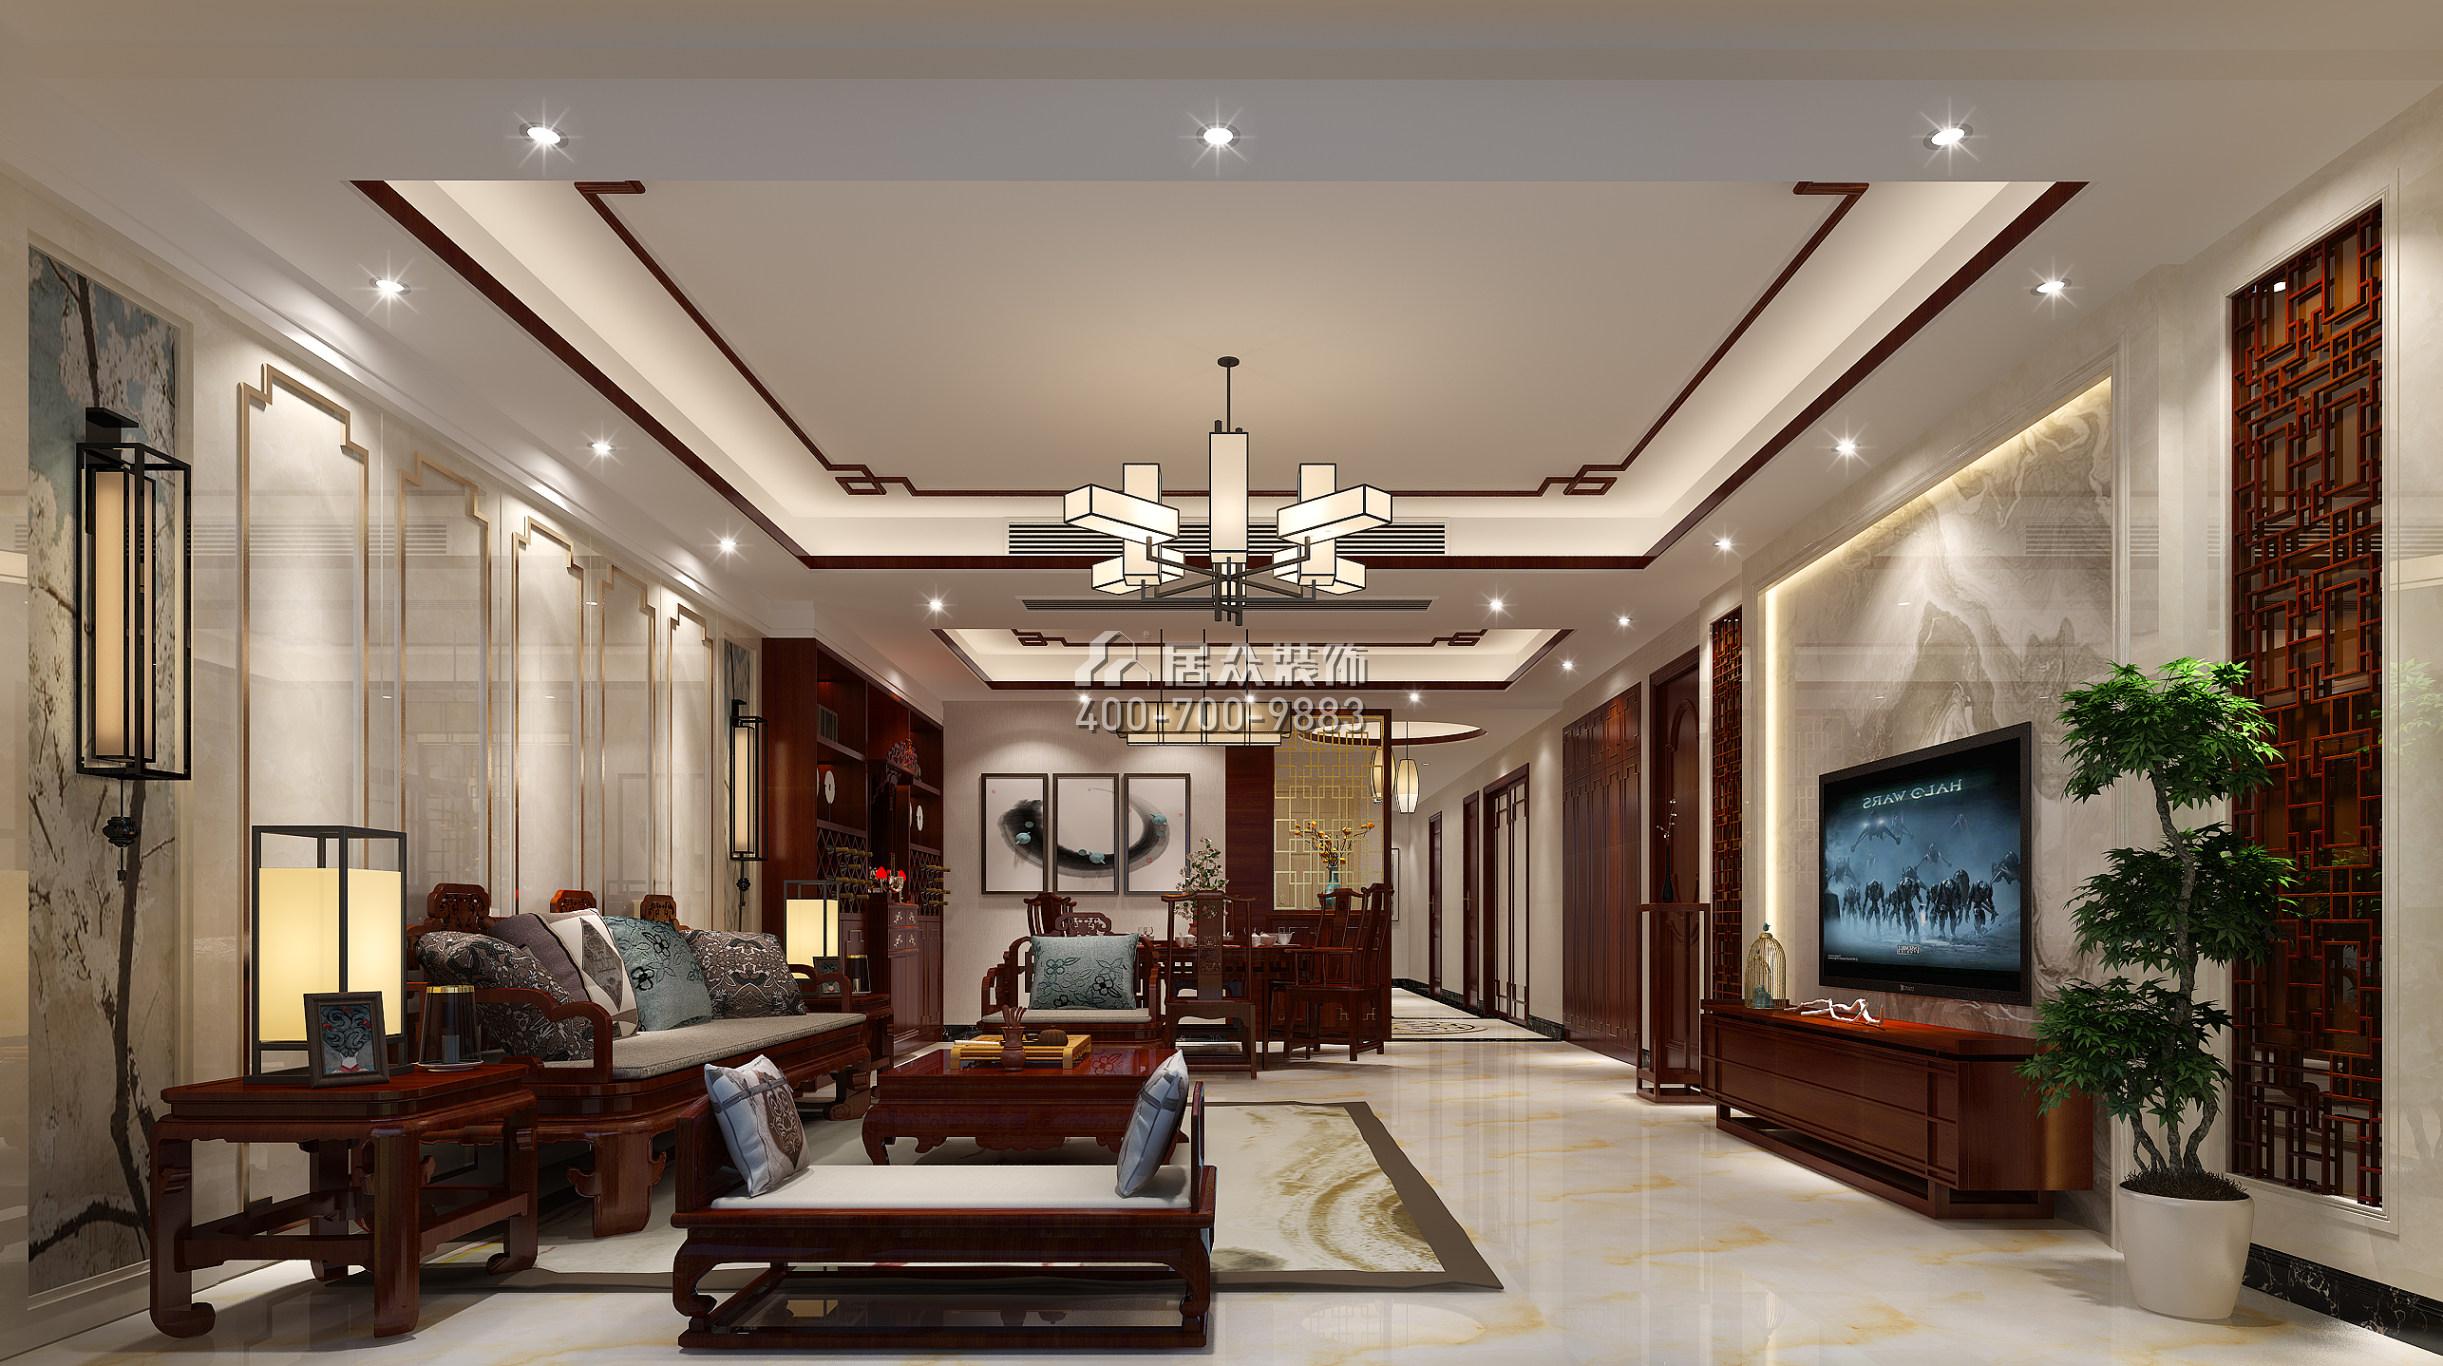 珊瑚天峰170平方米中式风格平层户型客厅装修效果图